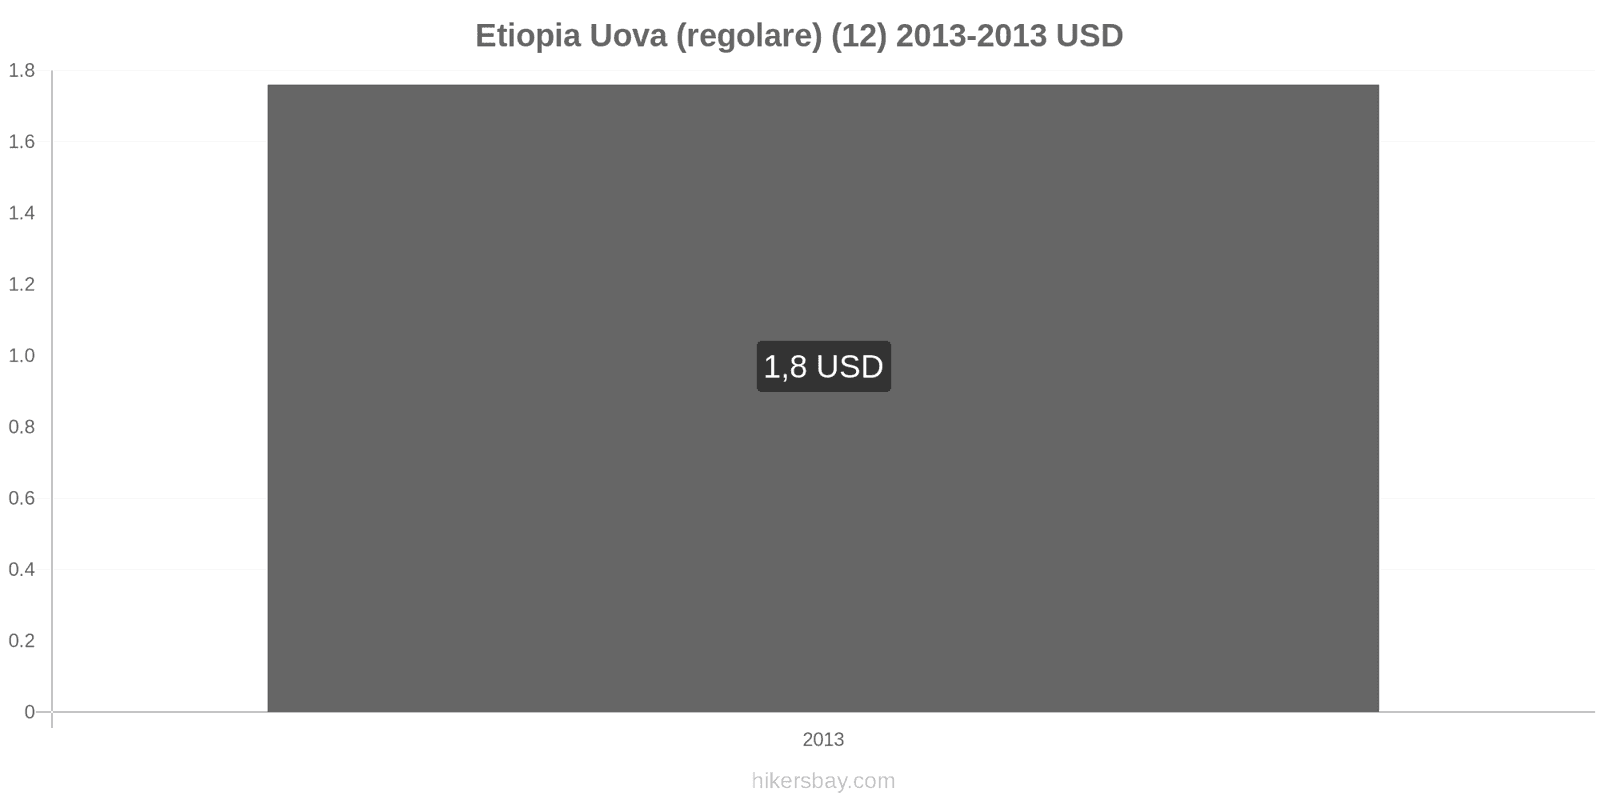 Etiopia cambi di prezzo Uova (normali) (12) hikersbay.com